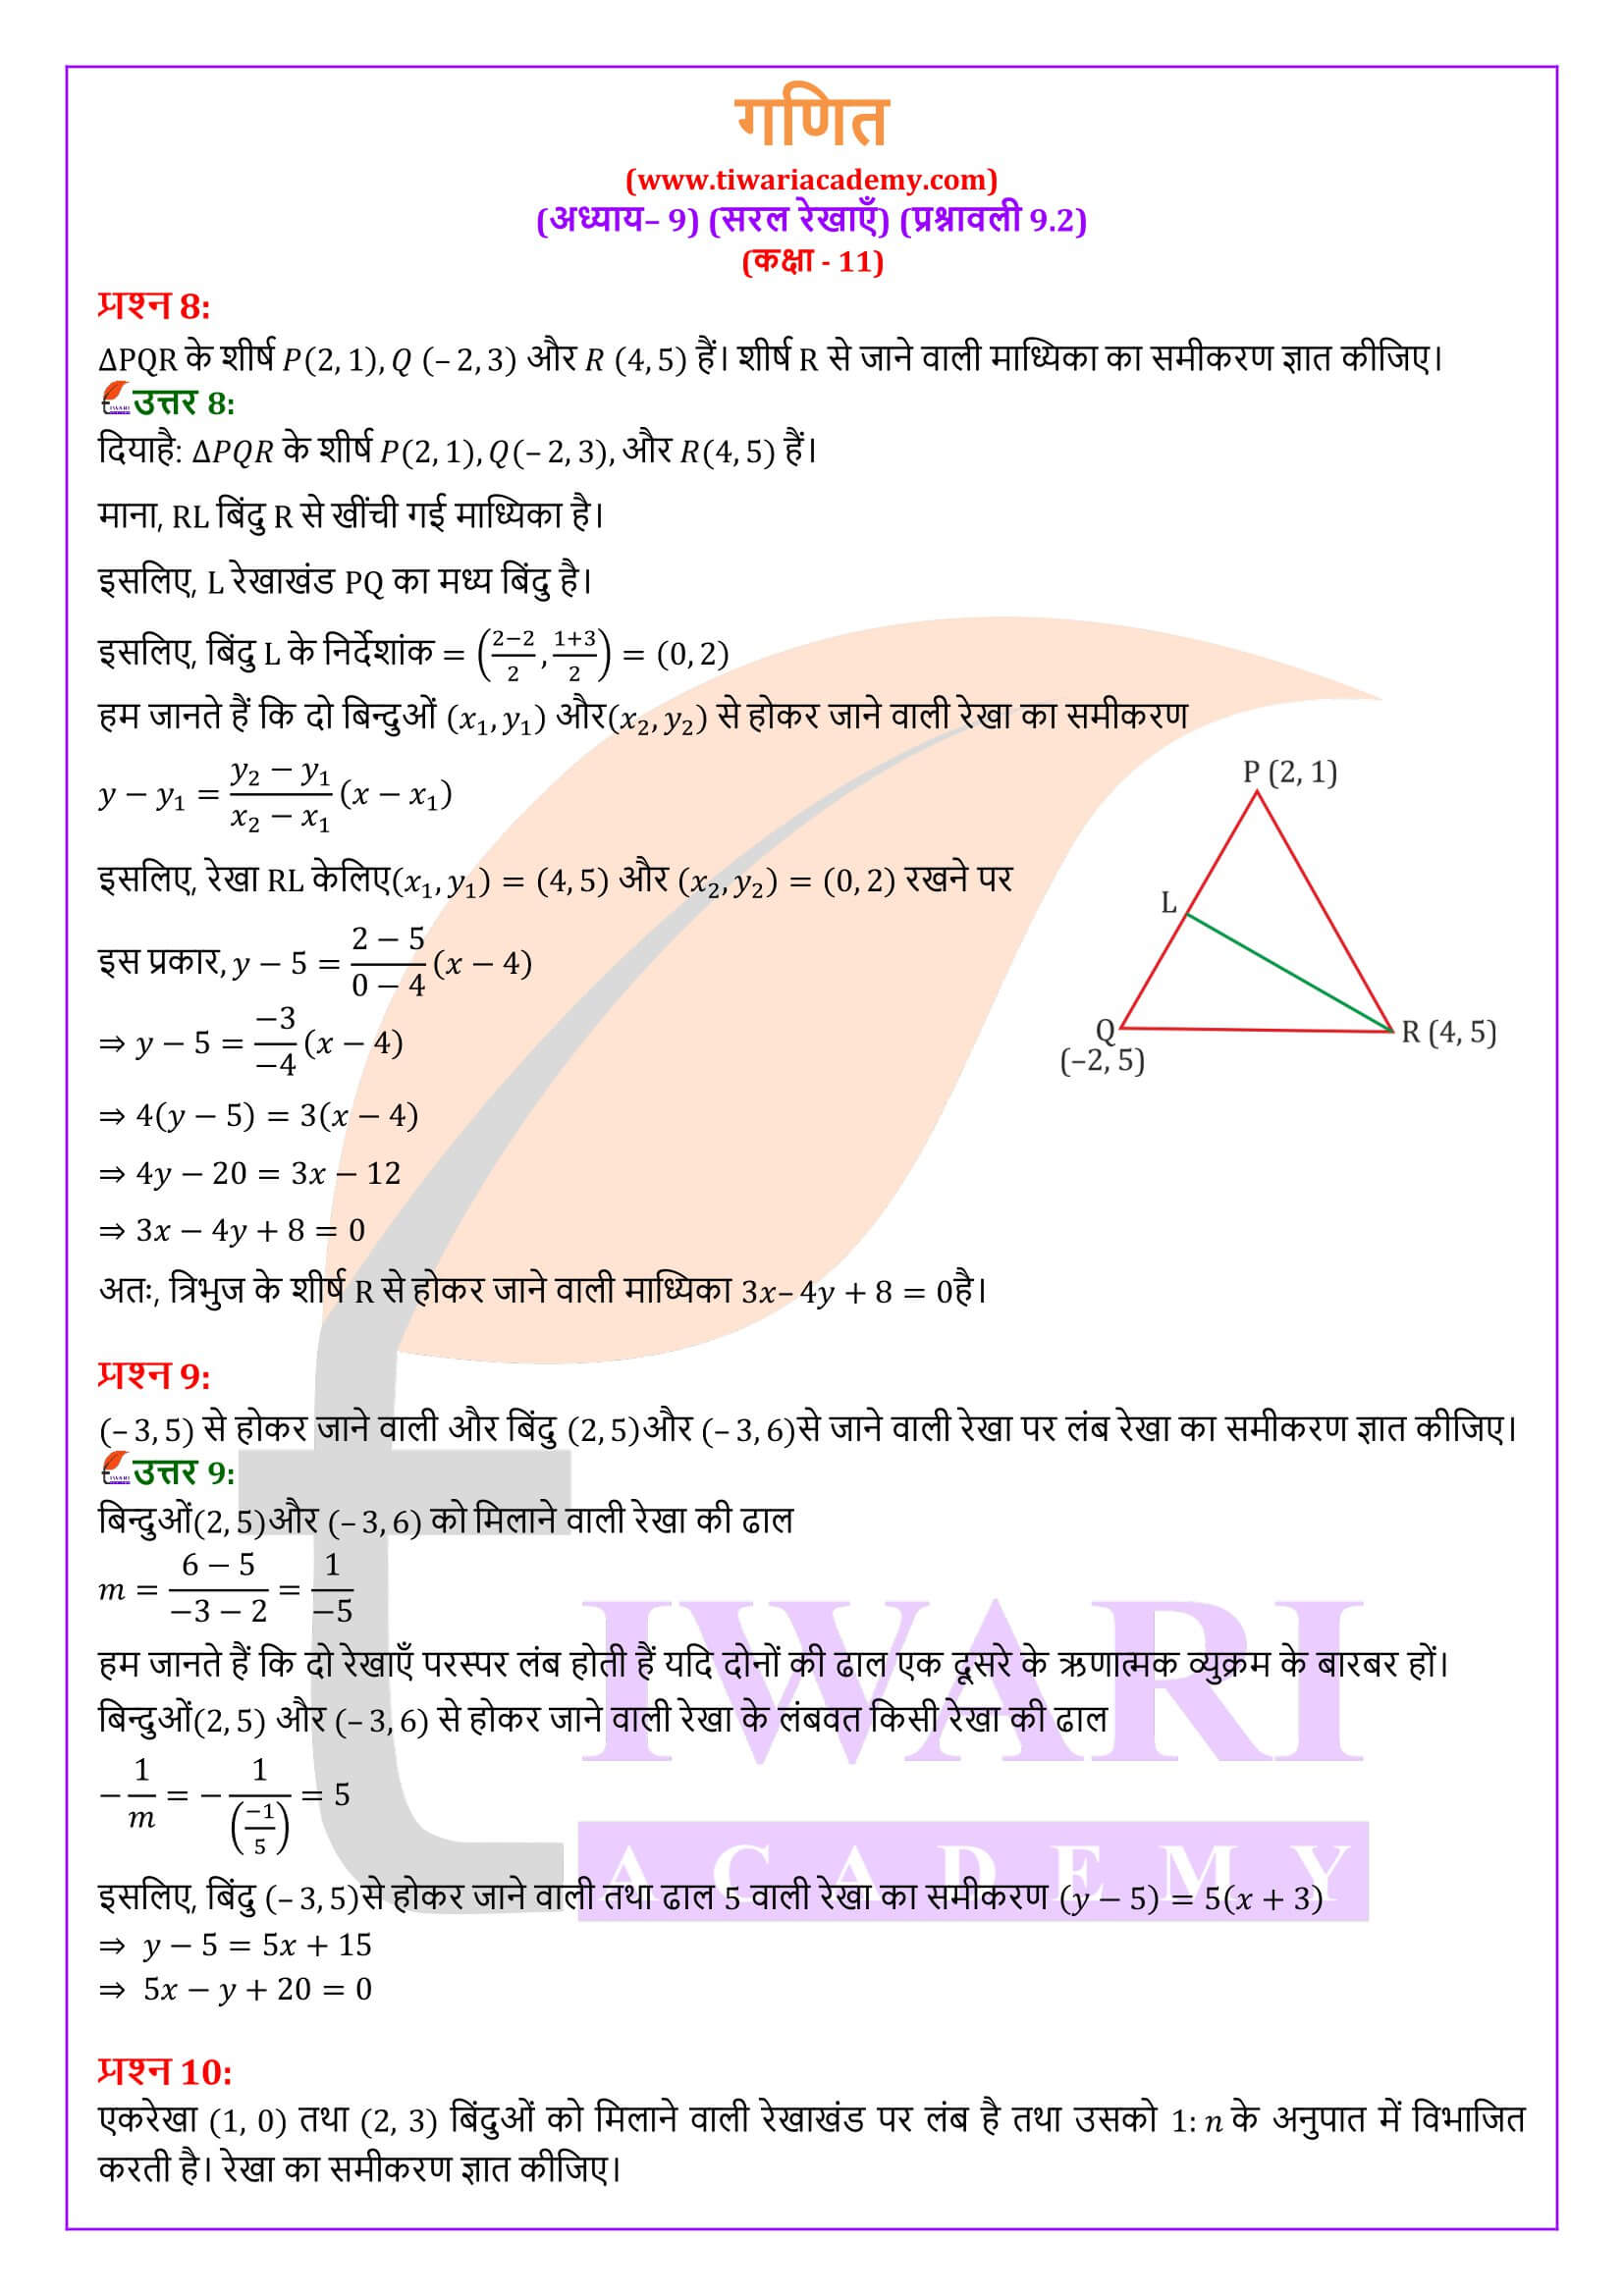 एनसीईआरटी समाधान कक्षा 11 गणित प्रश्नावली 9.2 हिंदी में हल